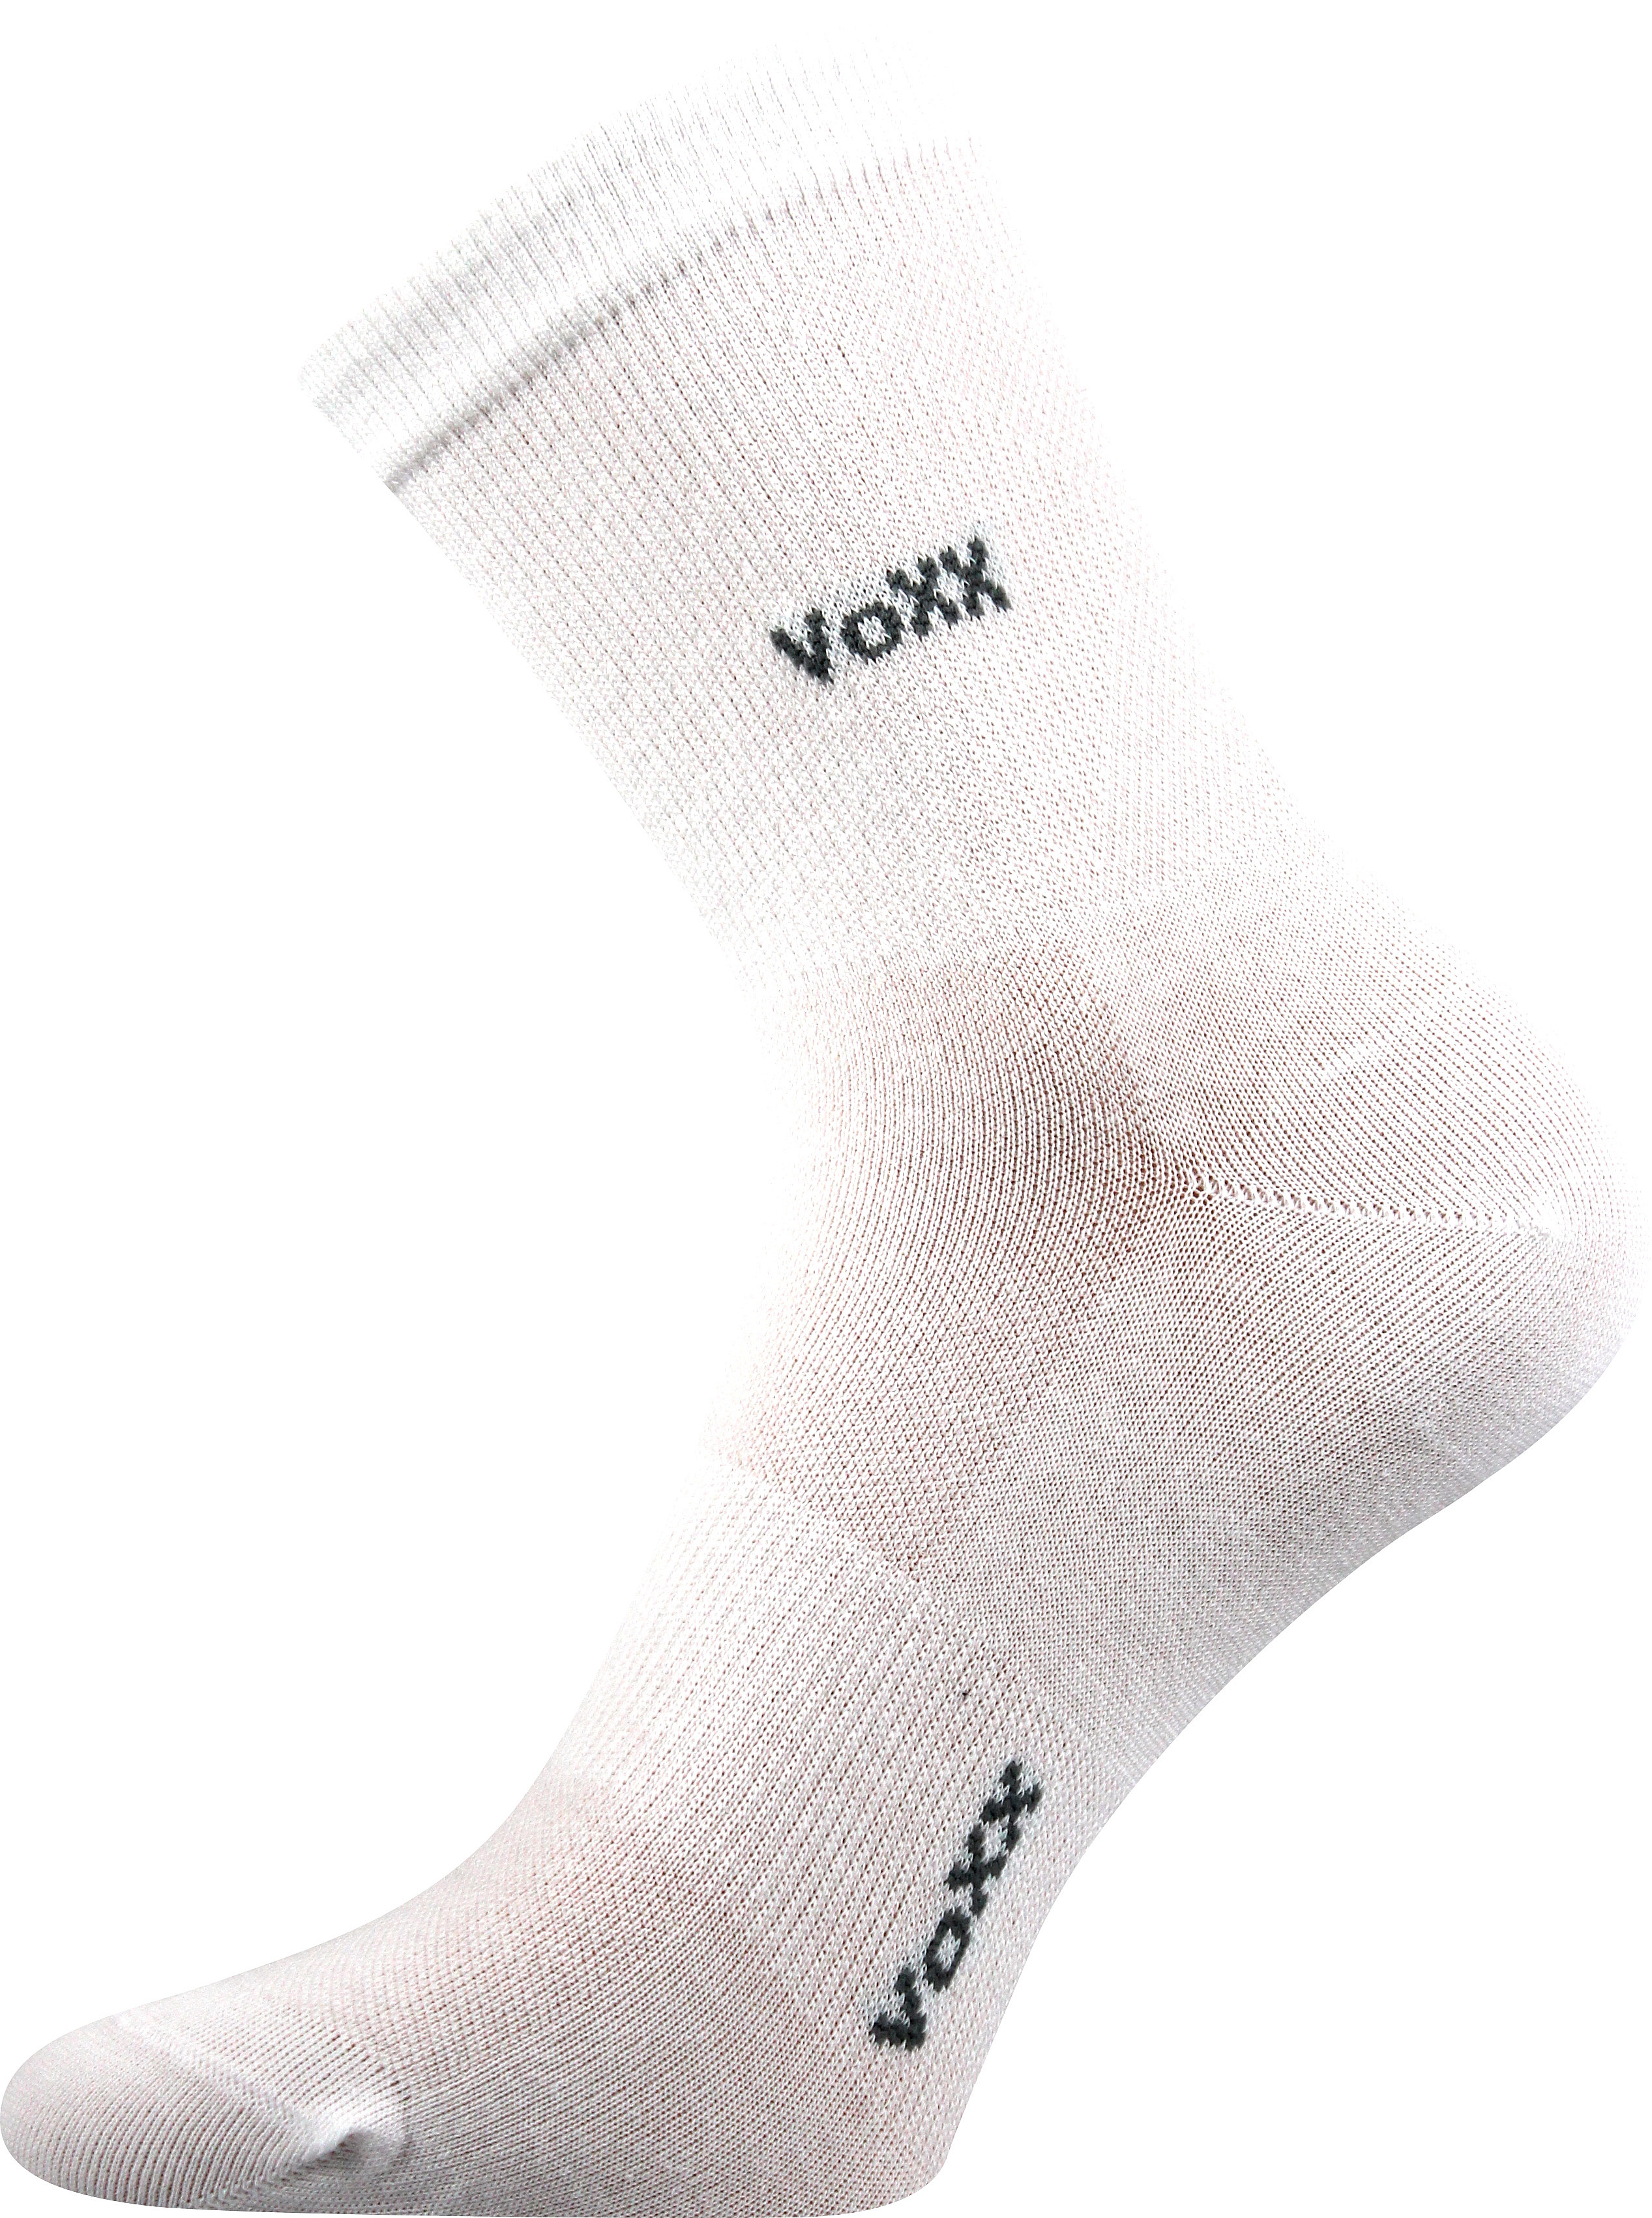 Ponožky sportovní Voxx Horizon - bílé, 43-46